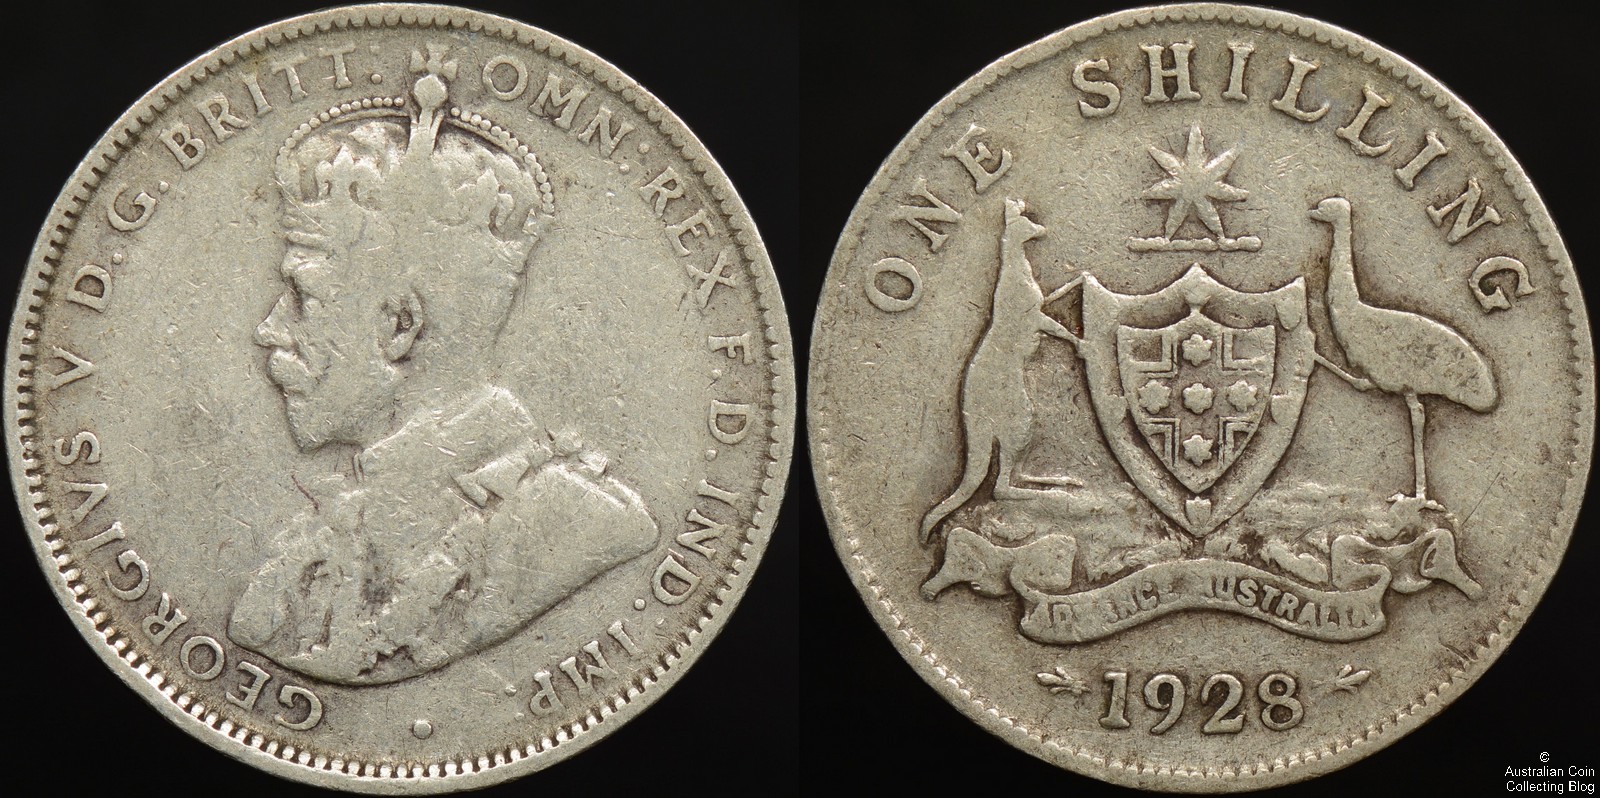 Australia 1928 Shilling